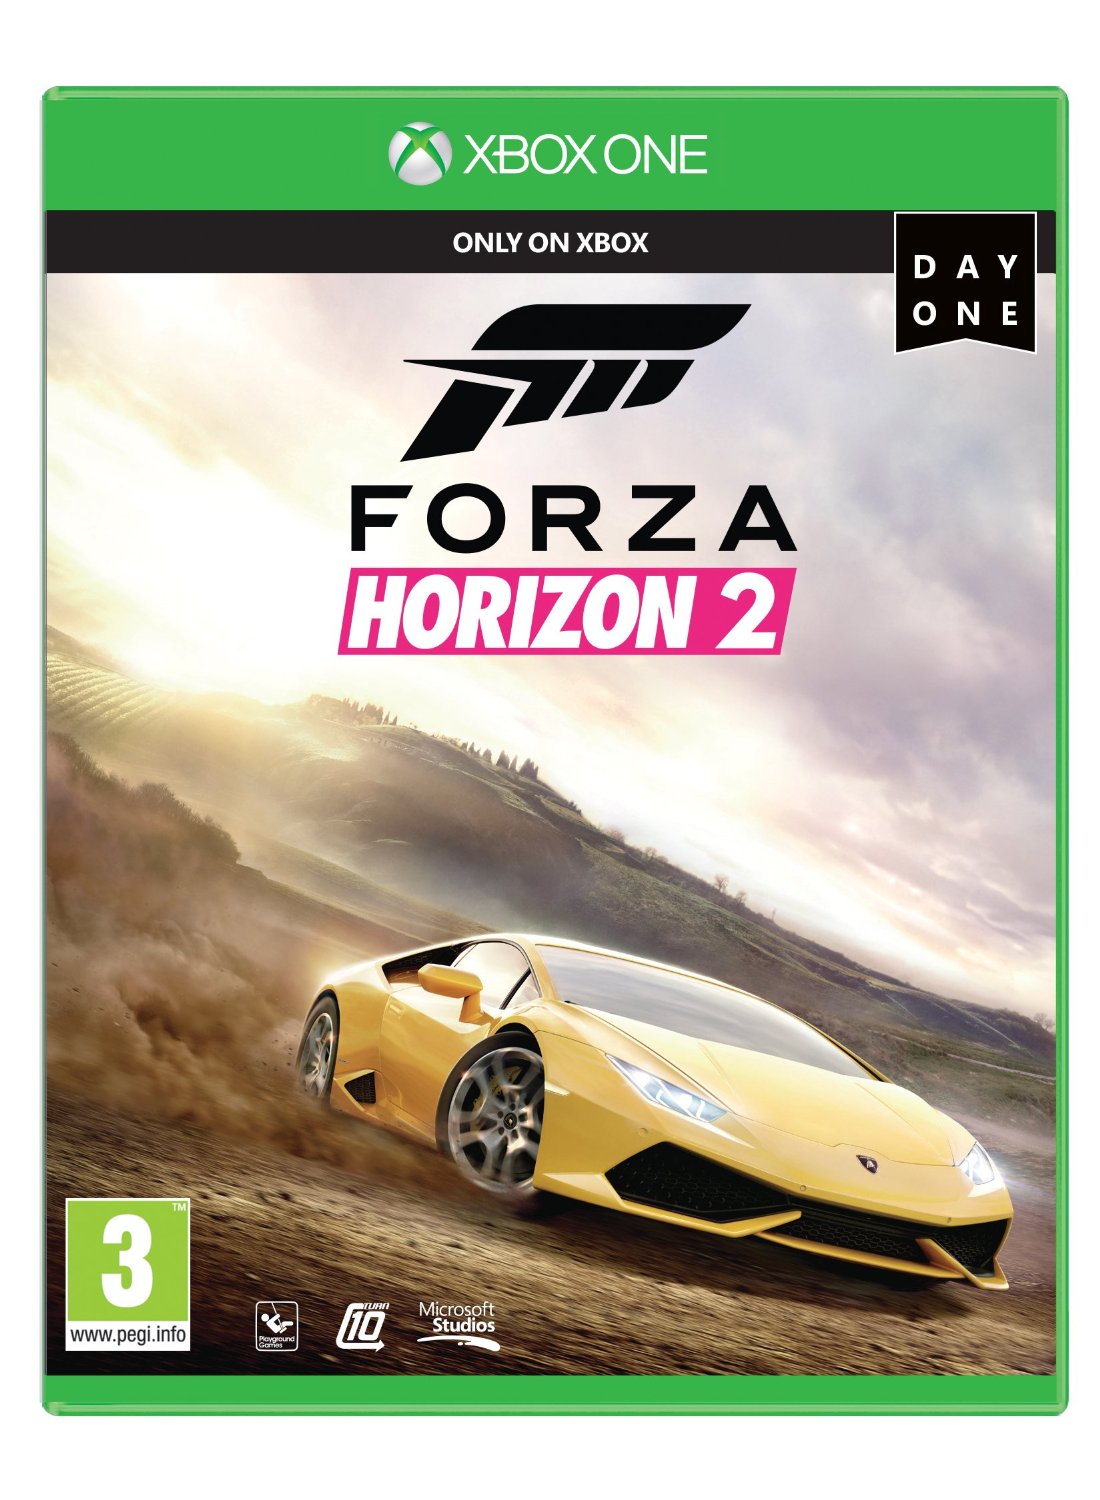 XBOX ONE Forza Horizon 2 